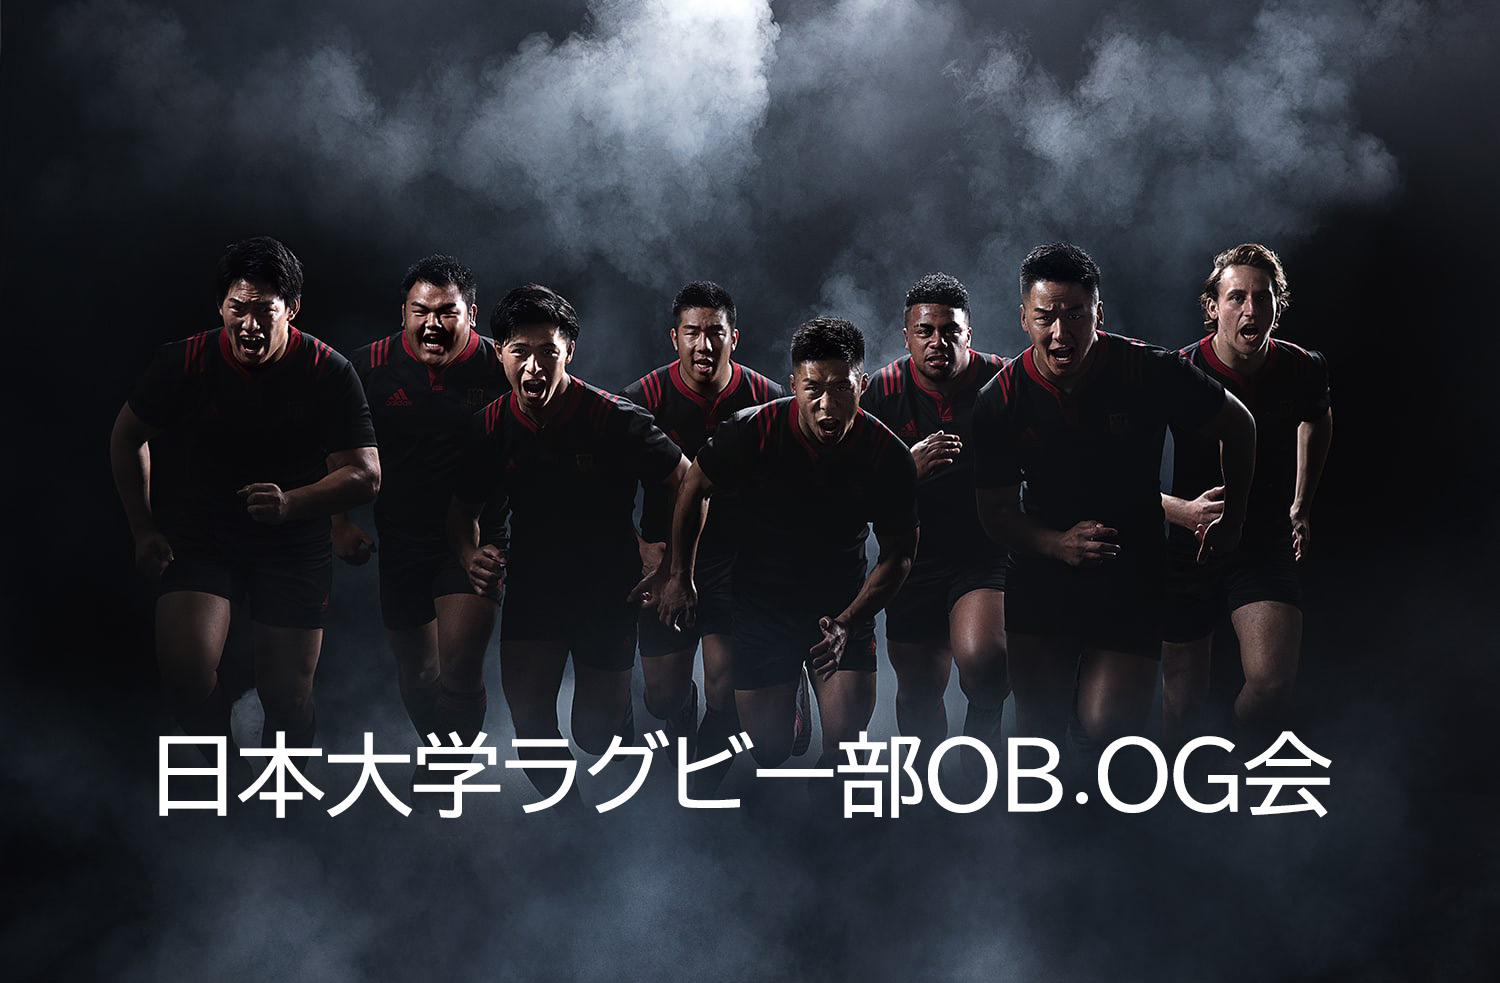 OB.OG会組織 | 日本大学ラグビー部OB.OG会